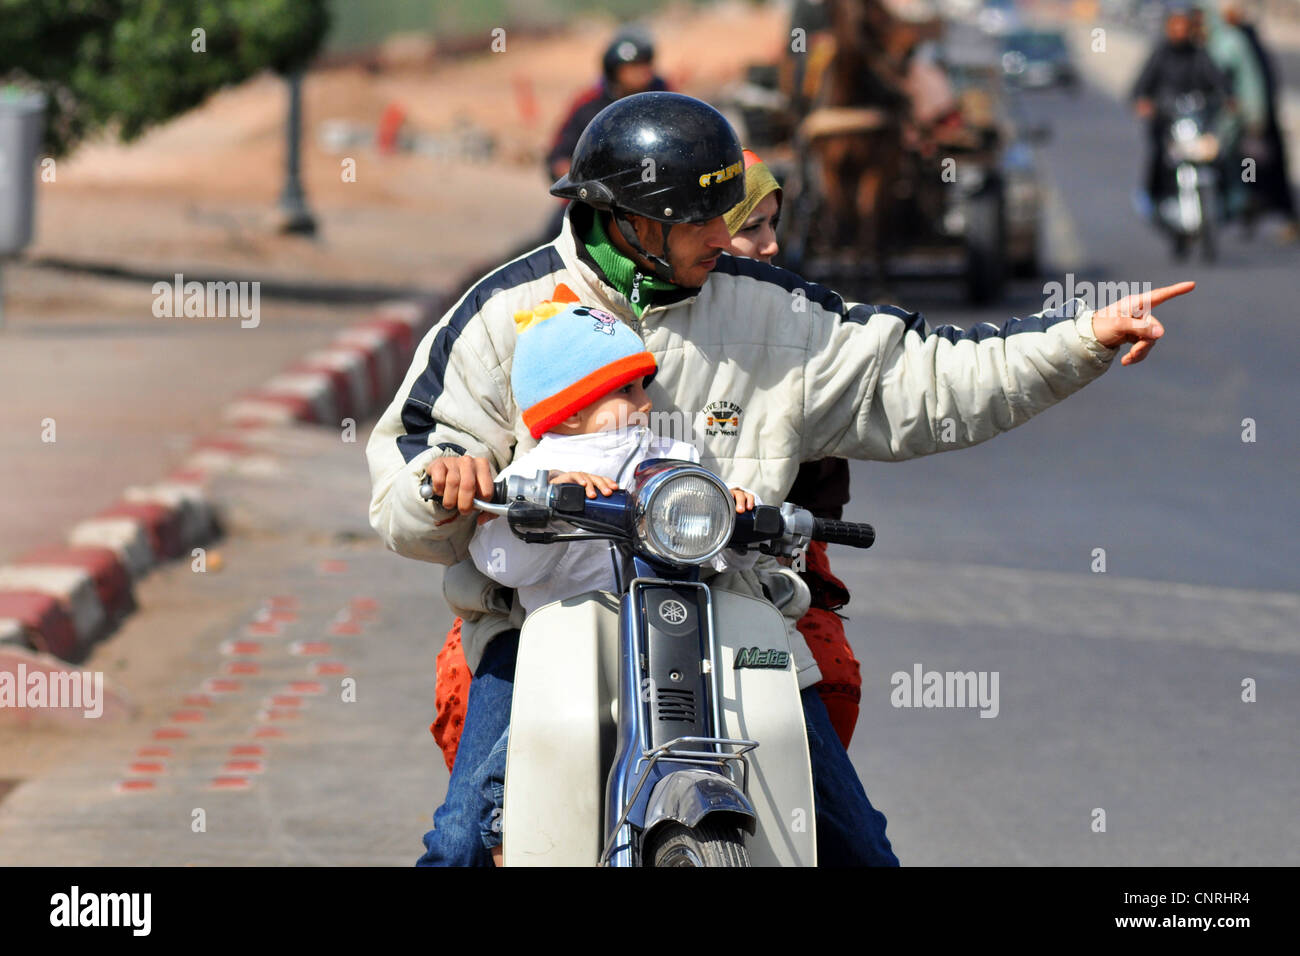 Toute la famille sur une moto, Marrakech, Maroc Banque D'Images